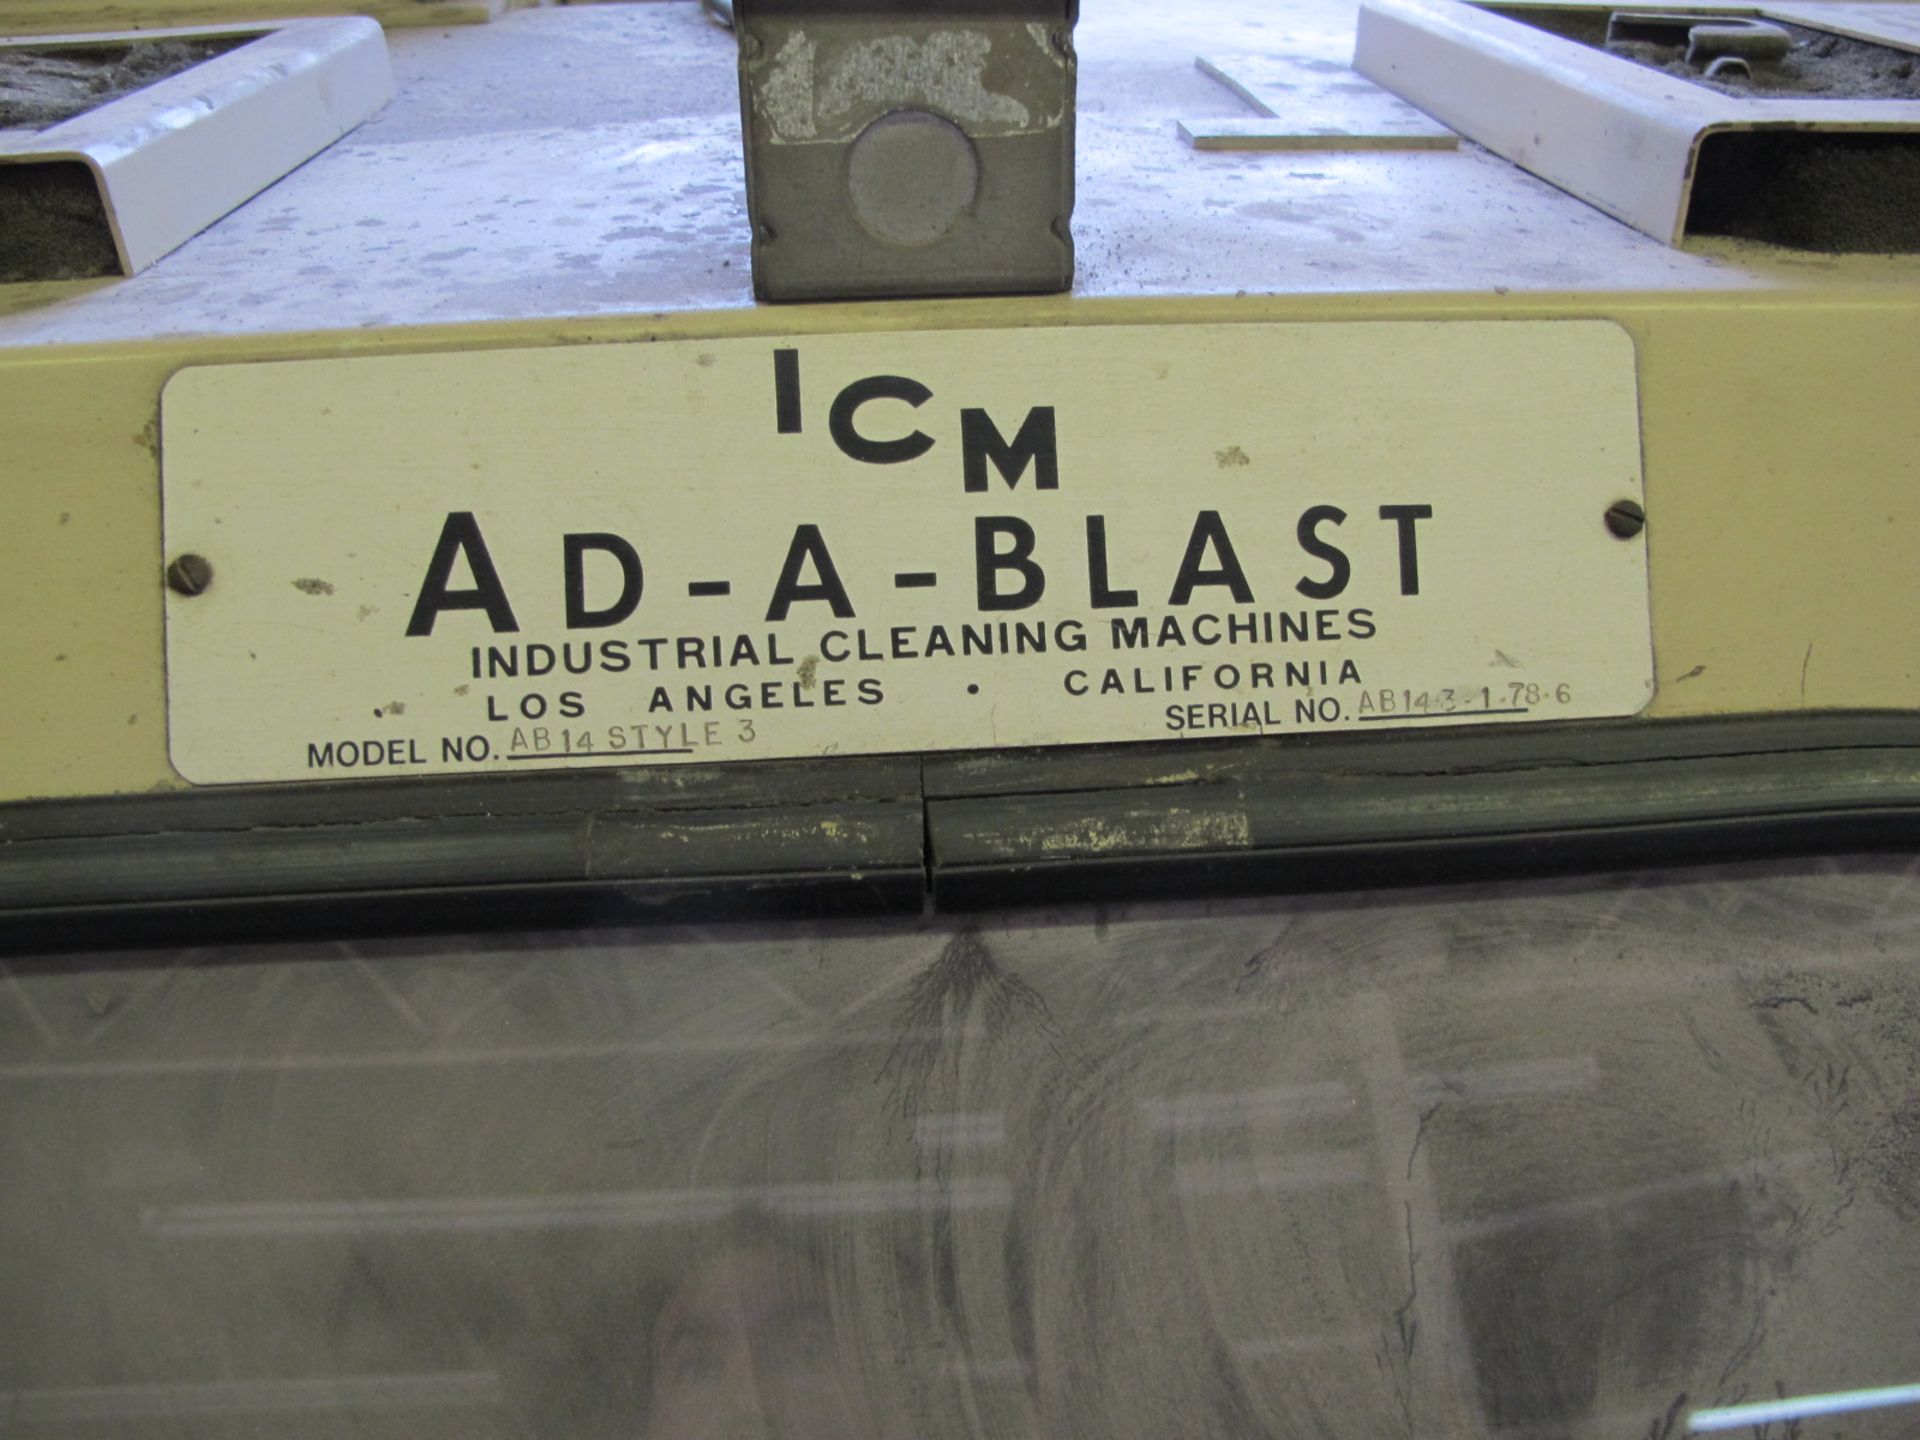 ICM Ad-A-Blast mdl. AB14 Dry Blast Cabinet w/ Dust Collector.